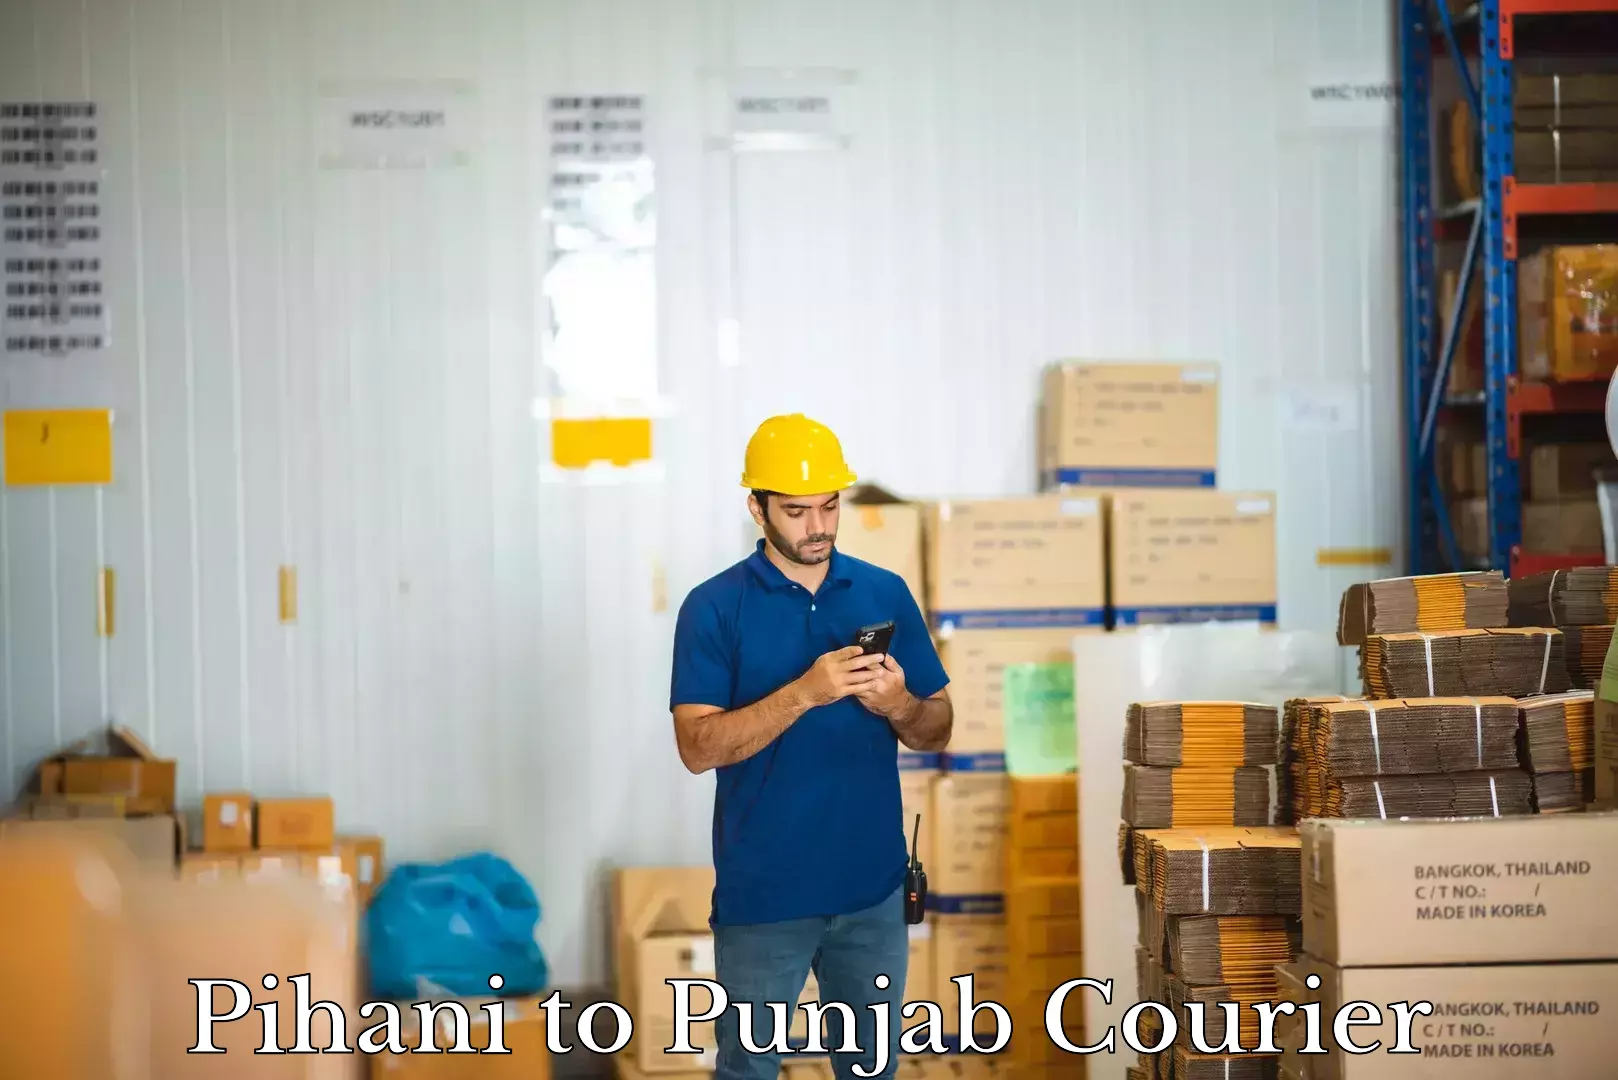 Luggage shipment tracking Pihani to Central University of Punjab Bathinda